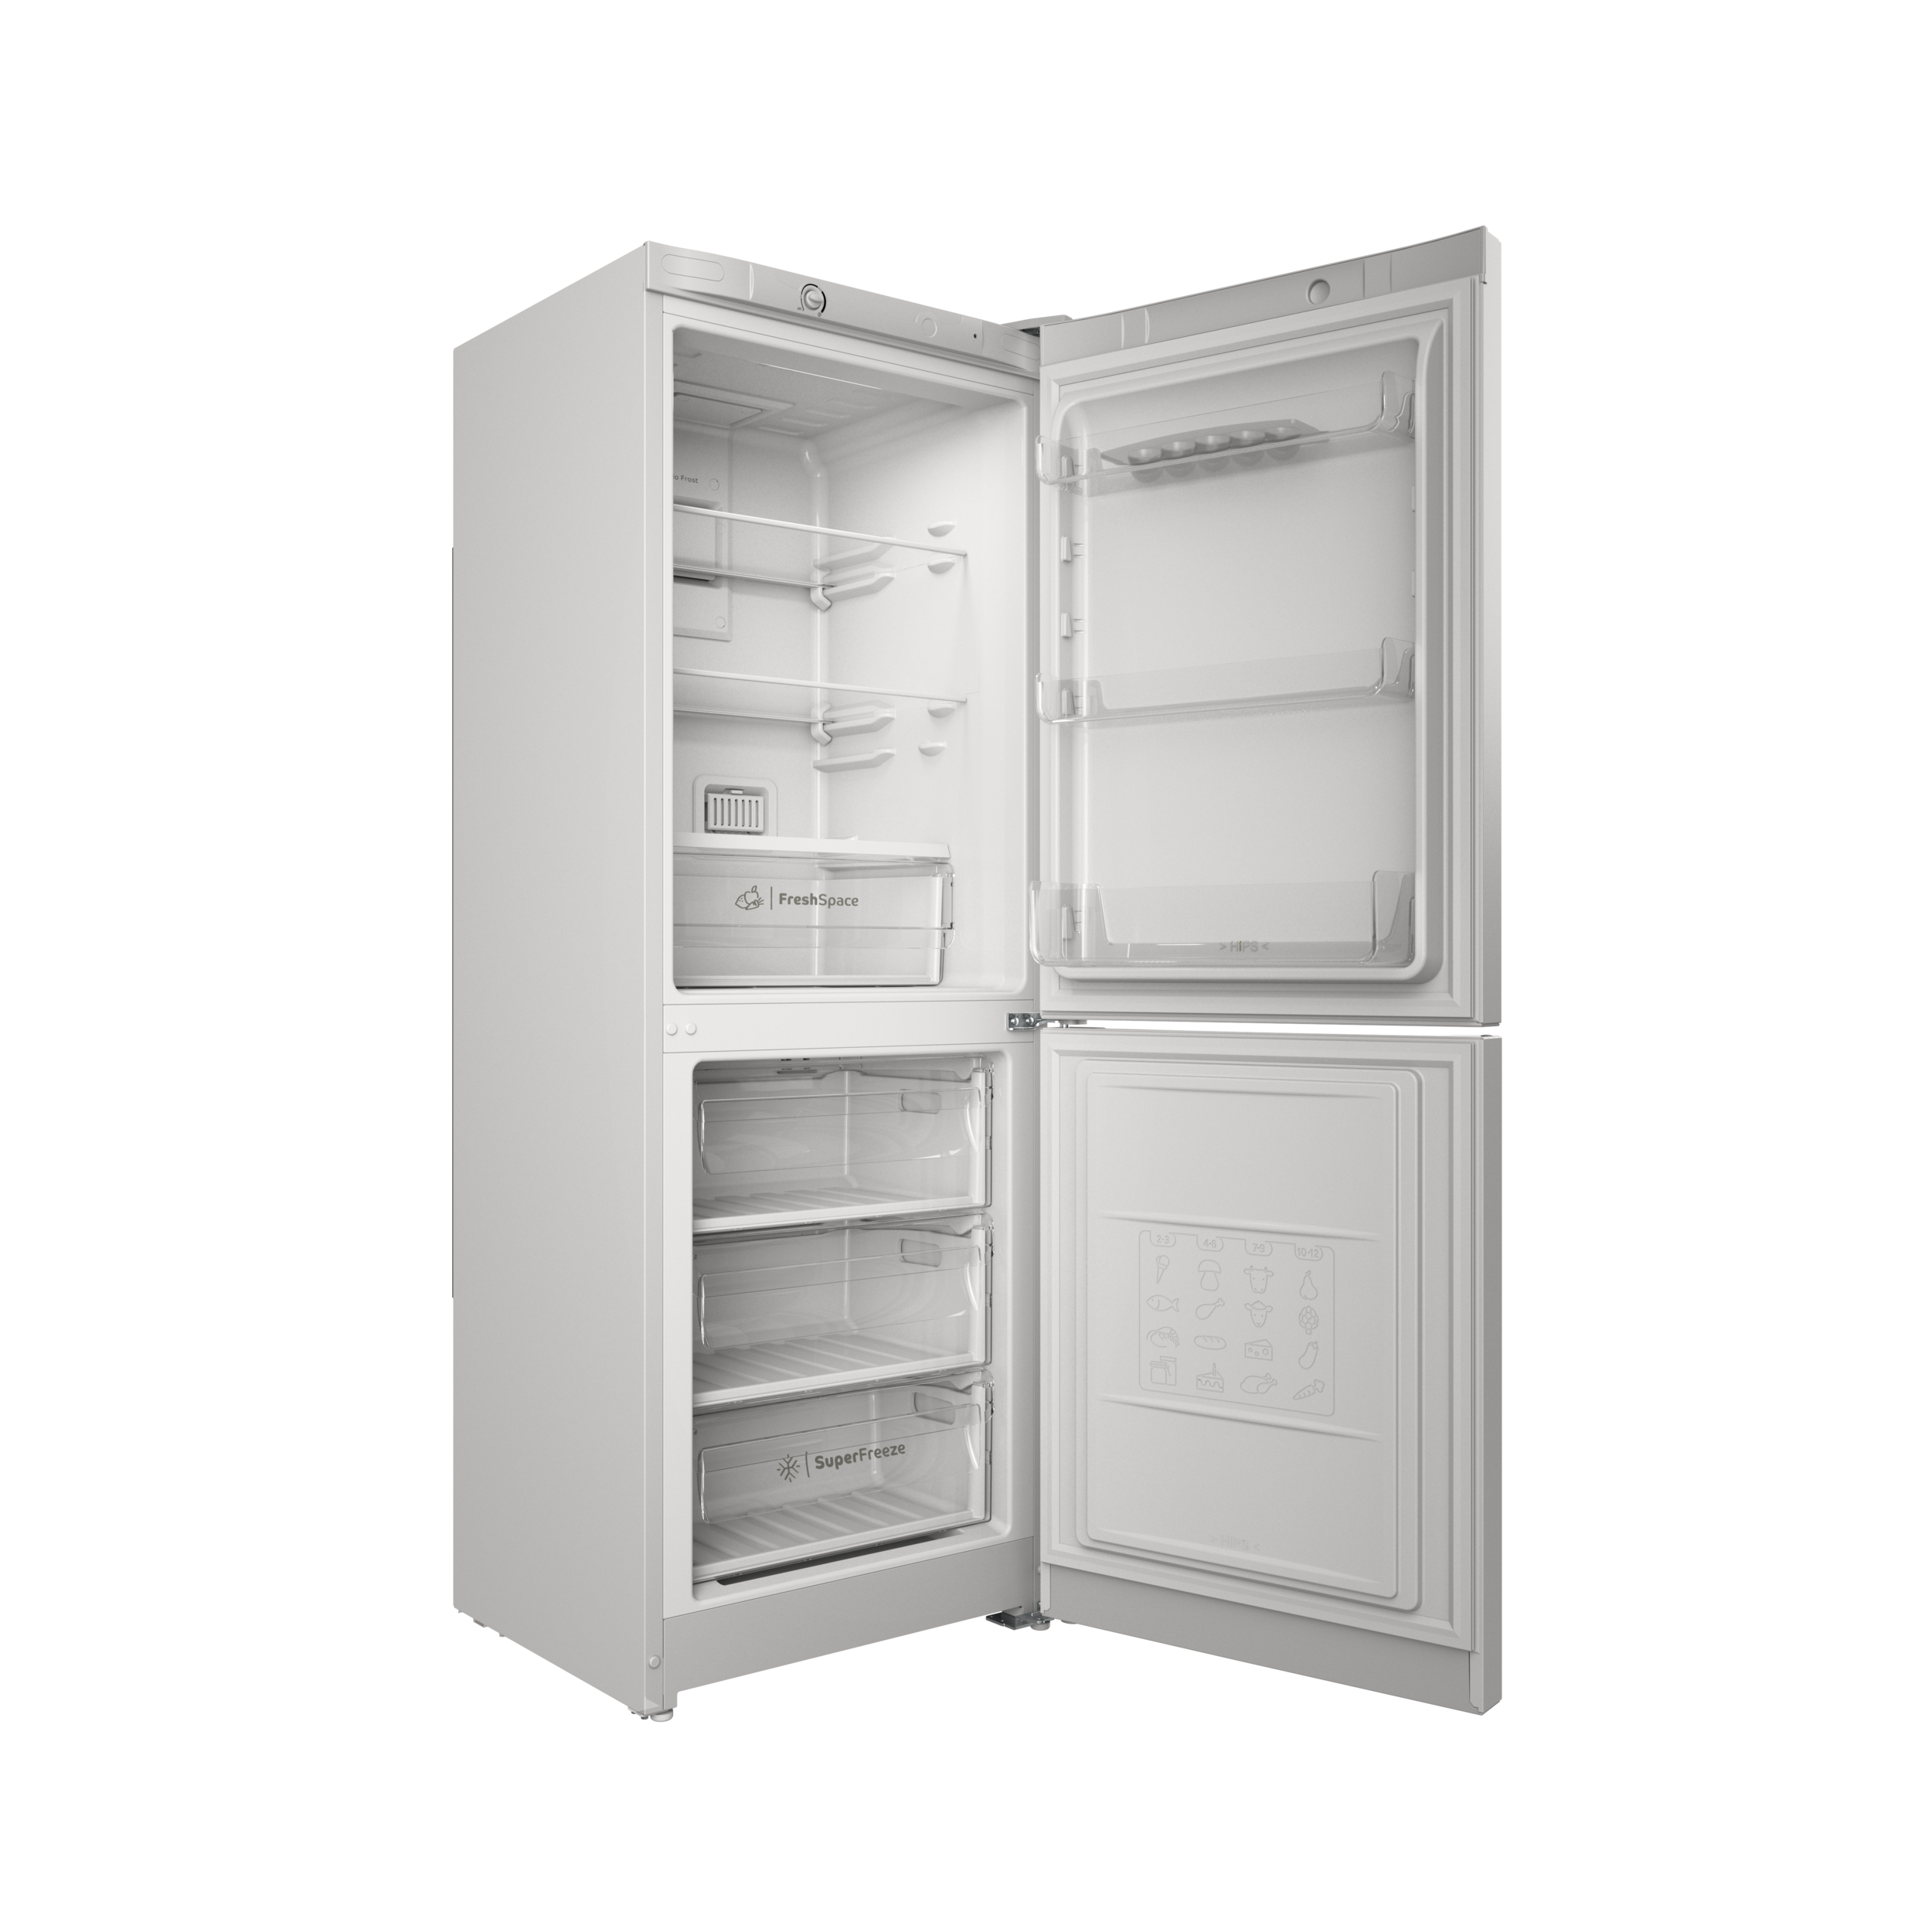 Холодильник с нижней морозильной камерой Indesit ITS 4160 W рис.4